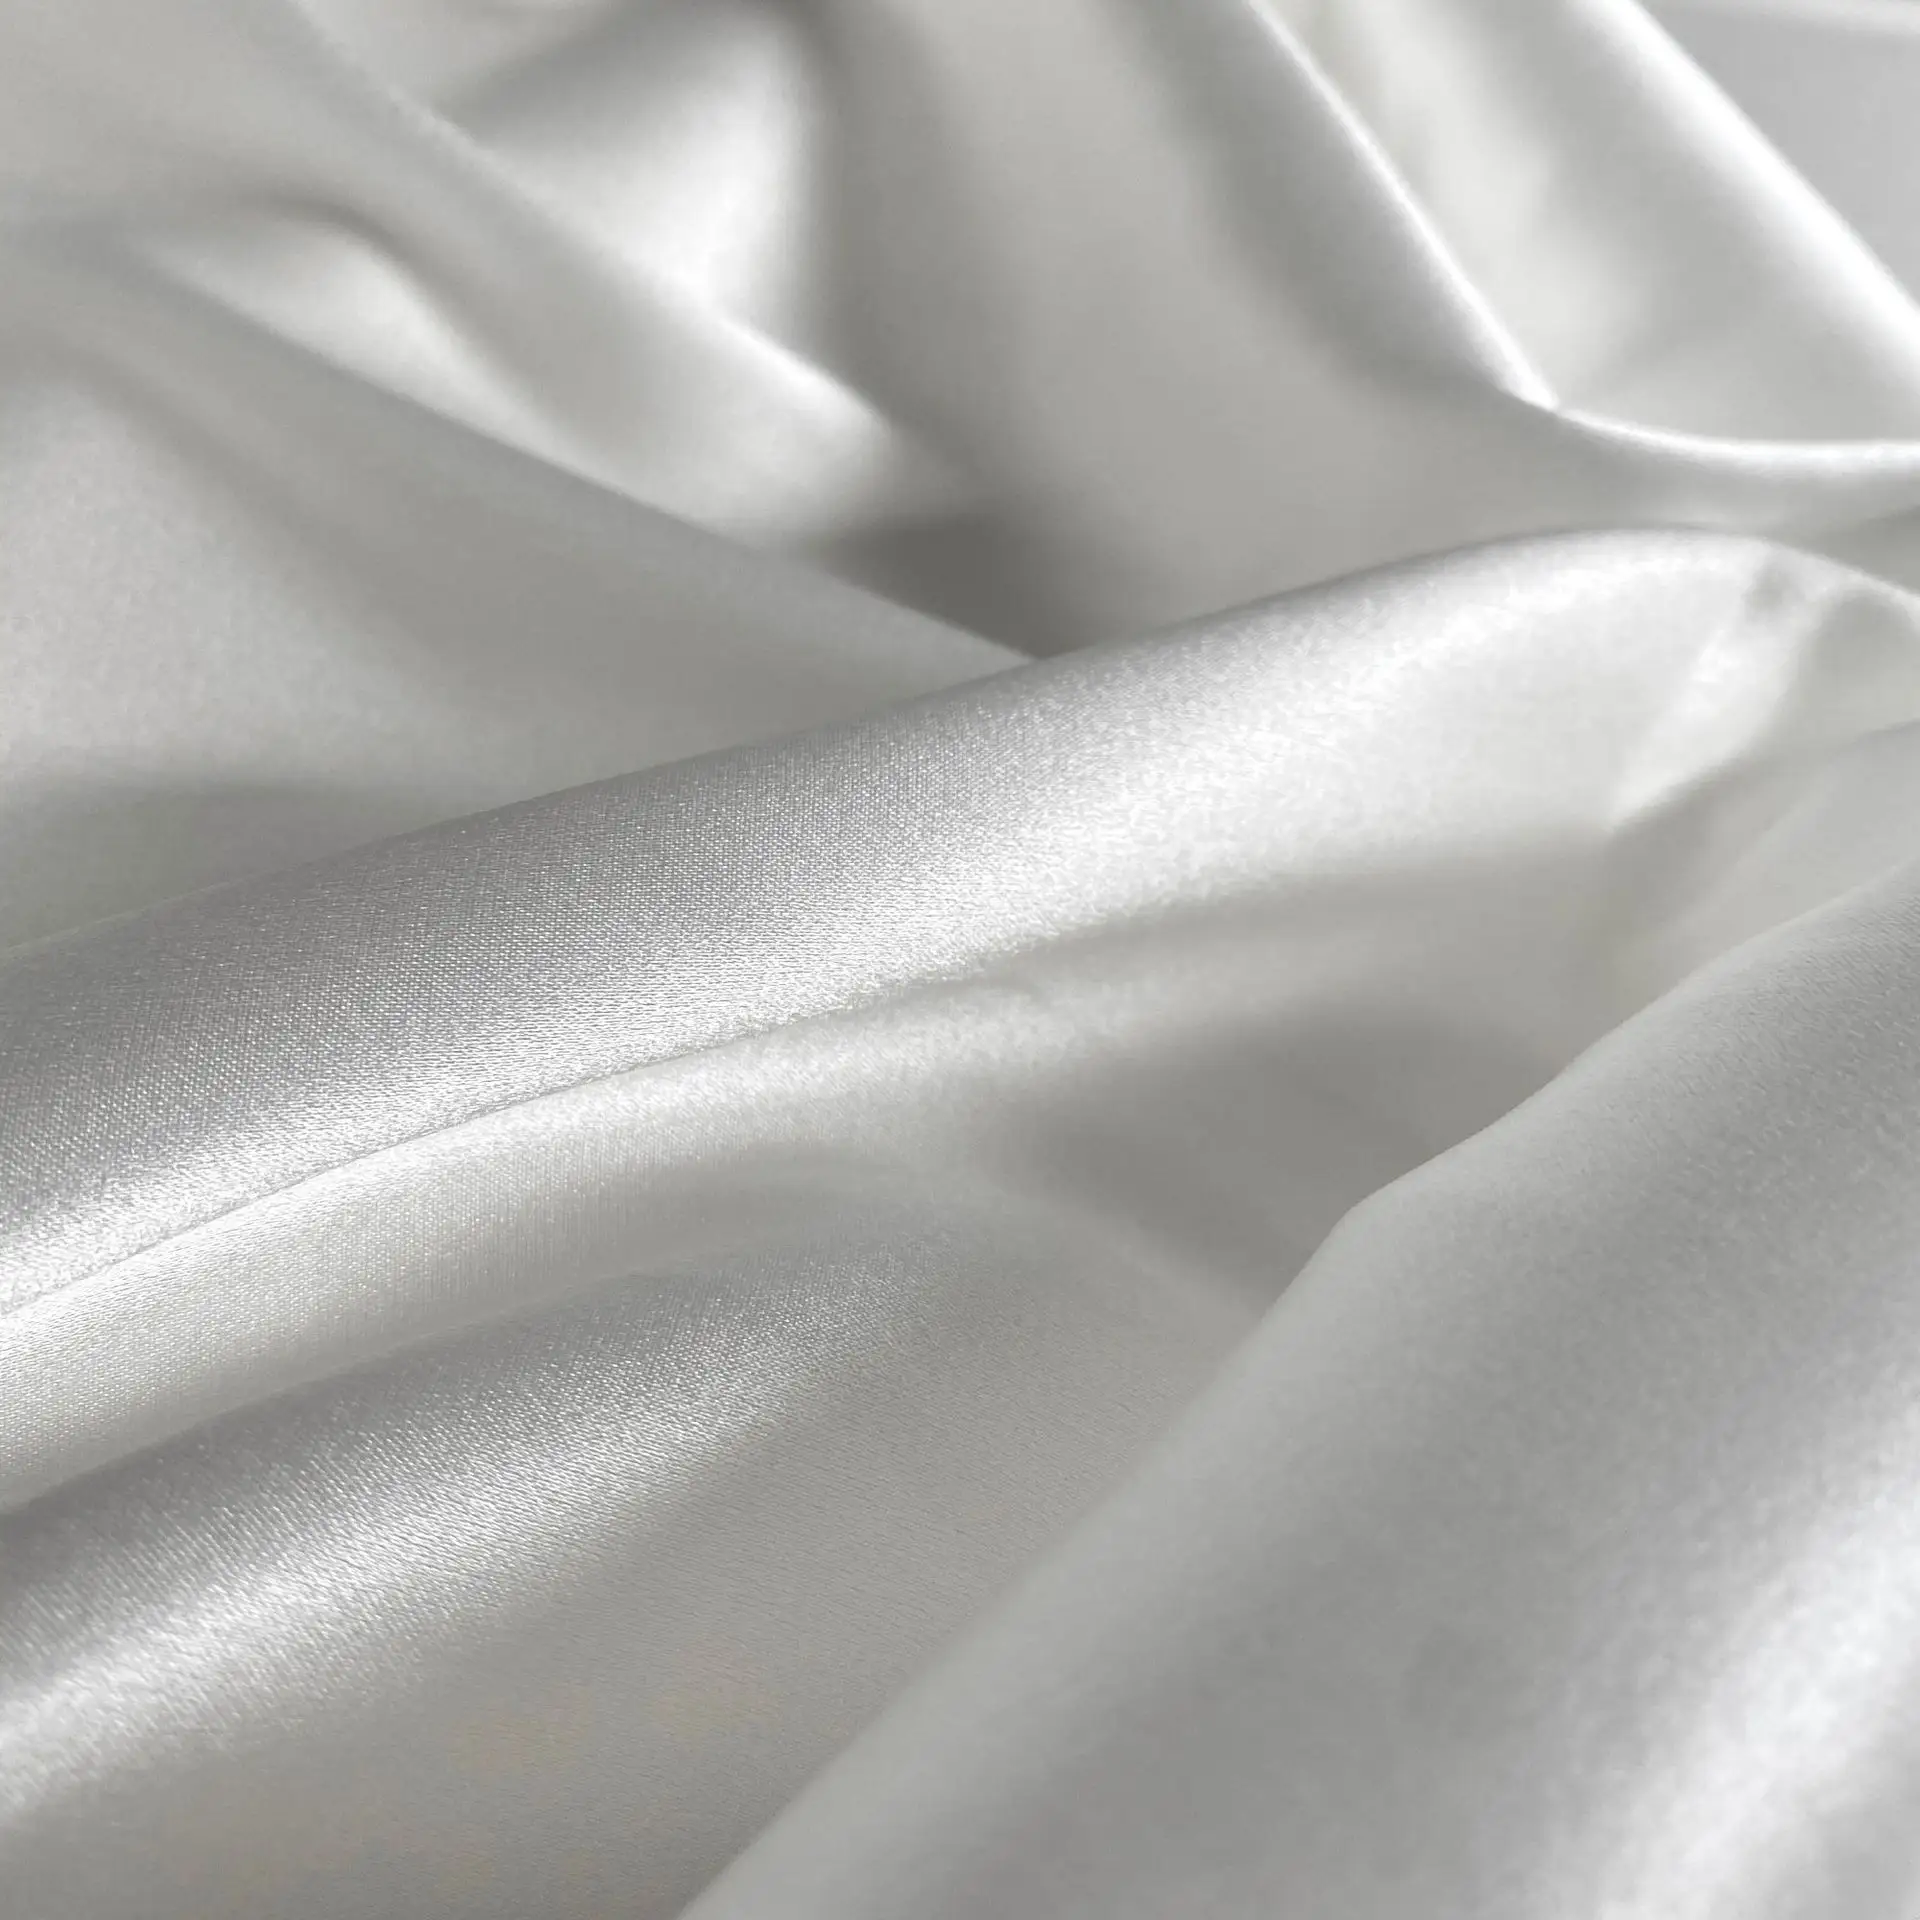 100 قطعة ملابس ميلبري تشارميوز أزياء الزفاف للأمهات لون مخصص 100% أبيض لون خام ملابس الترفيه من الأقمشة الصناعية النقية